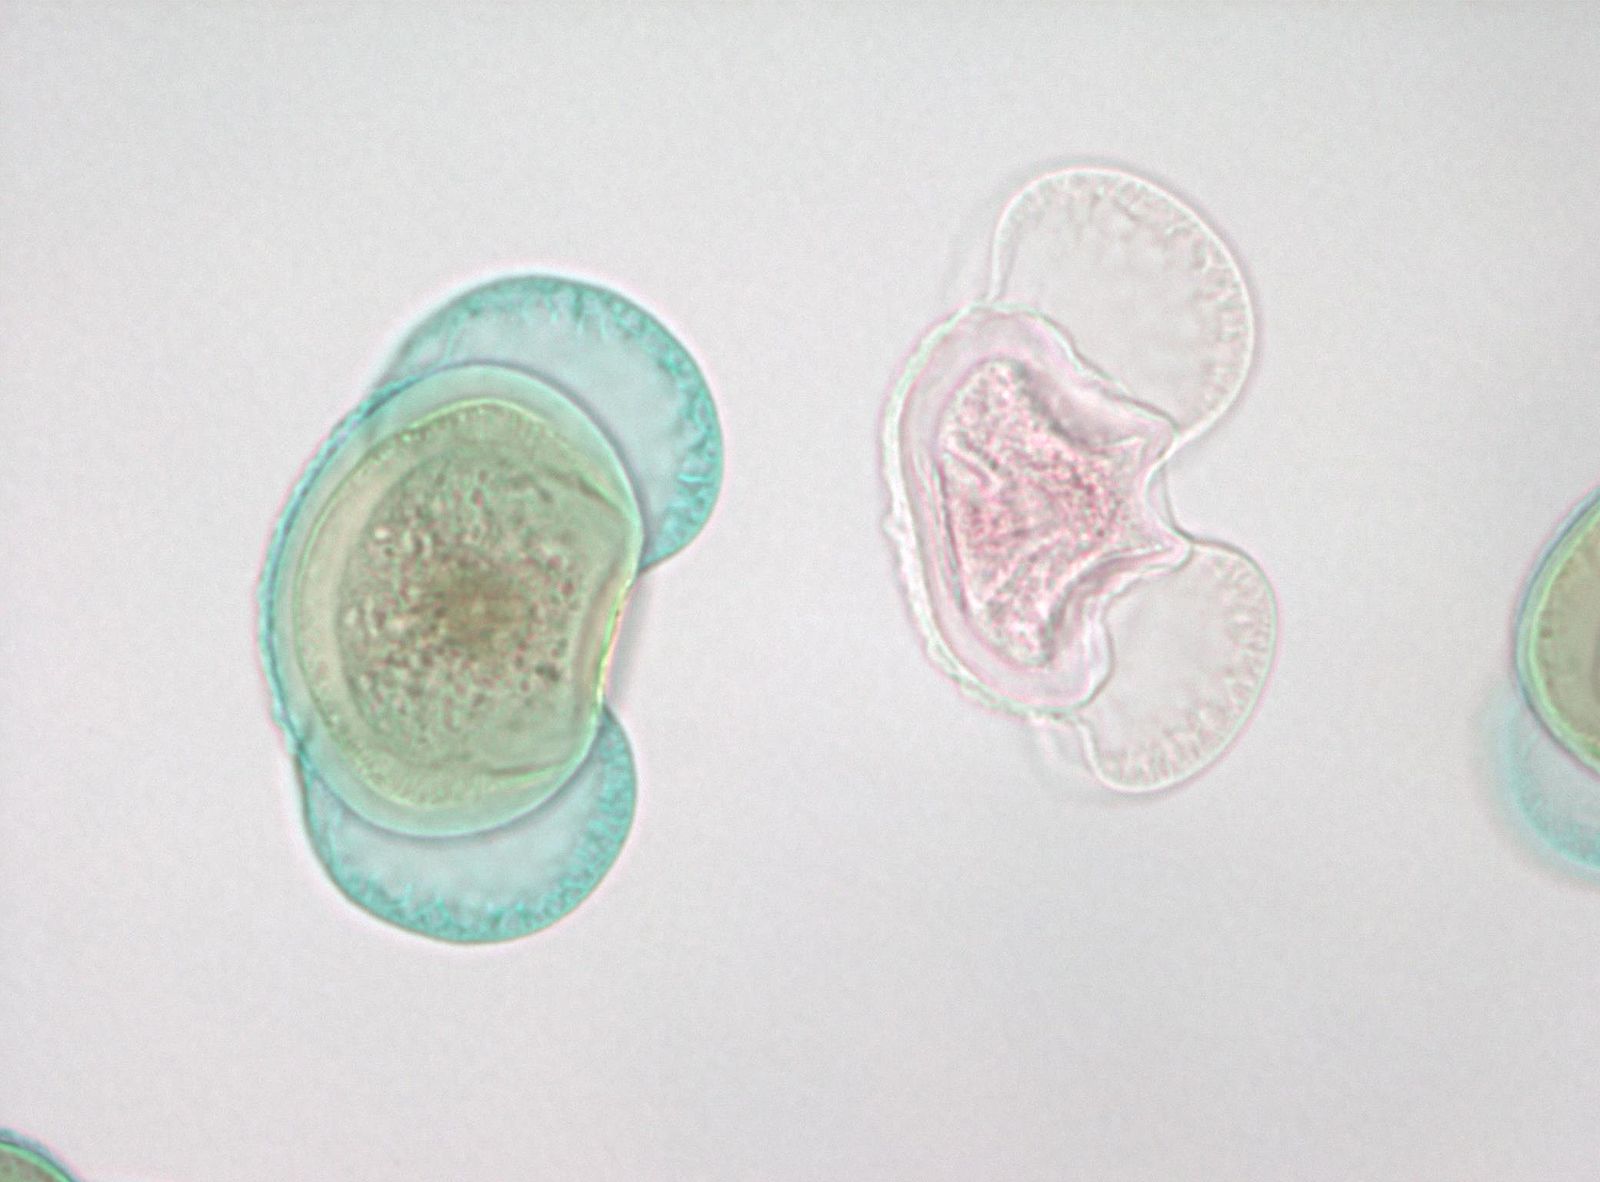 Microscopía de polen de pino, una célula es de color azul verdoso y la otra es una célula rosa translúcida